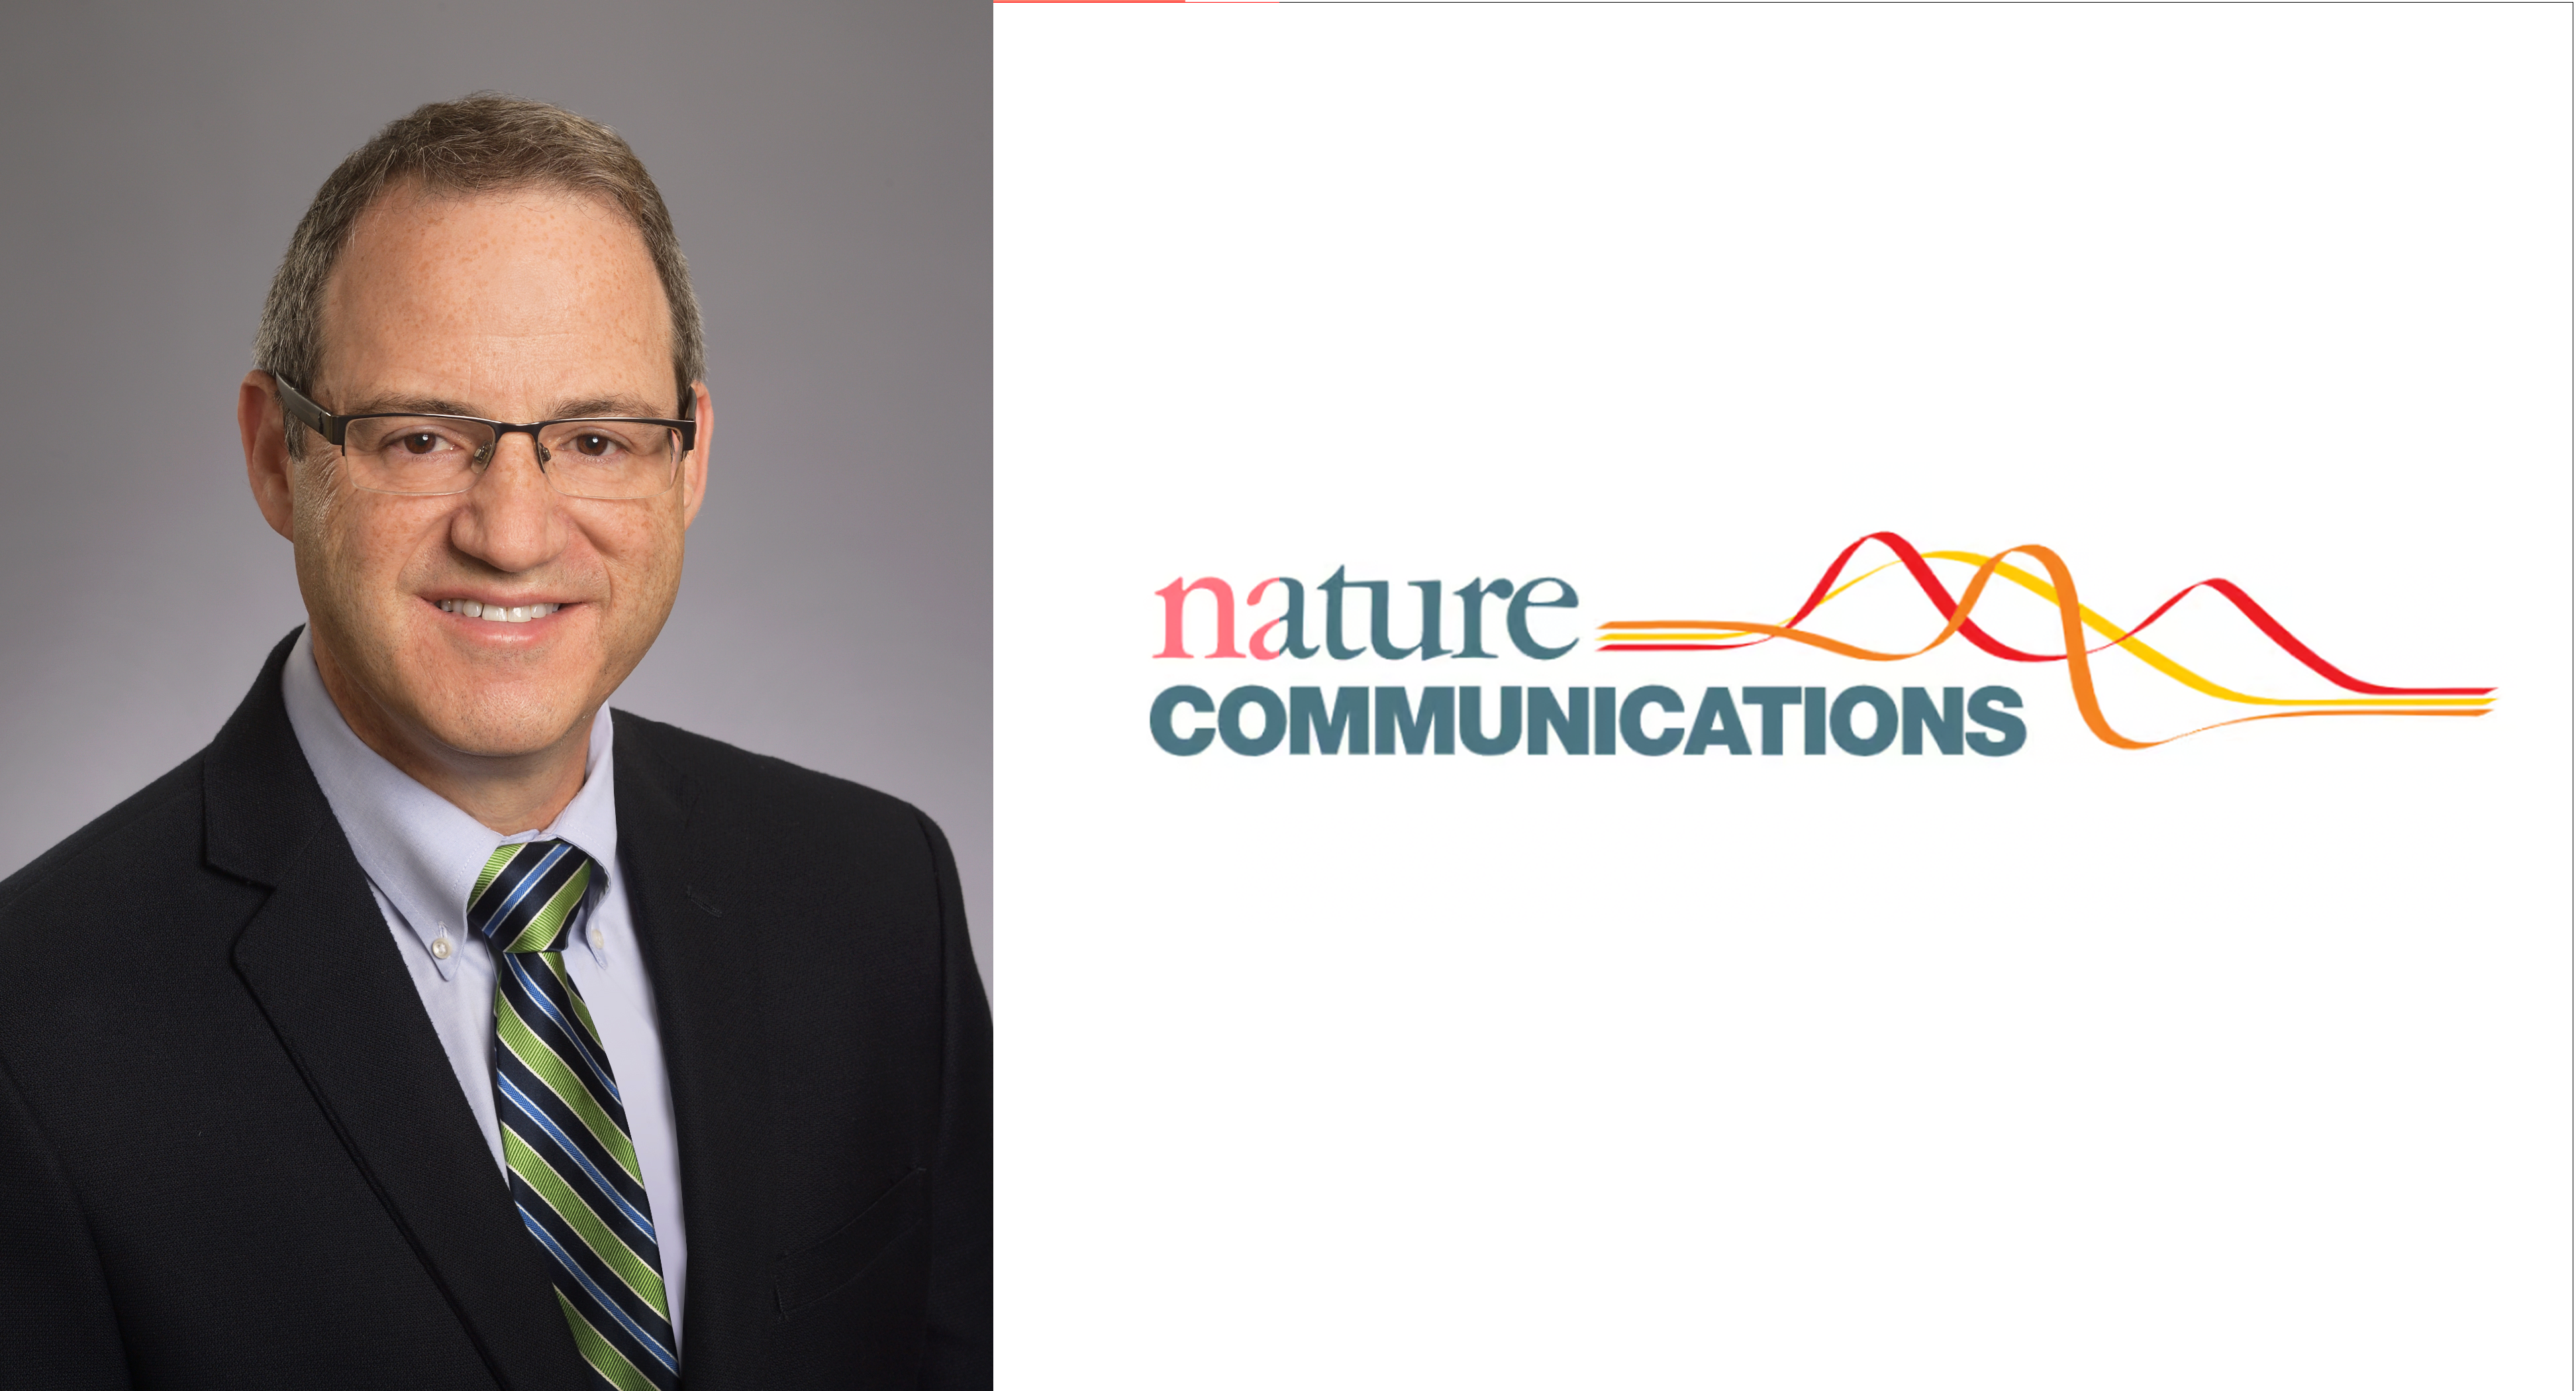  Gary Bassell and Nature Communications logo